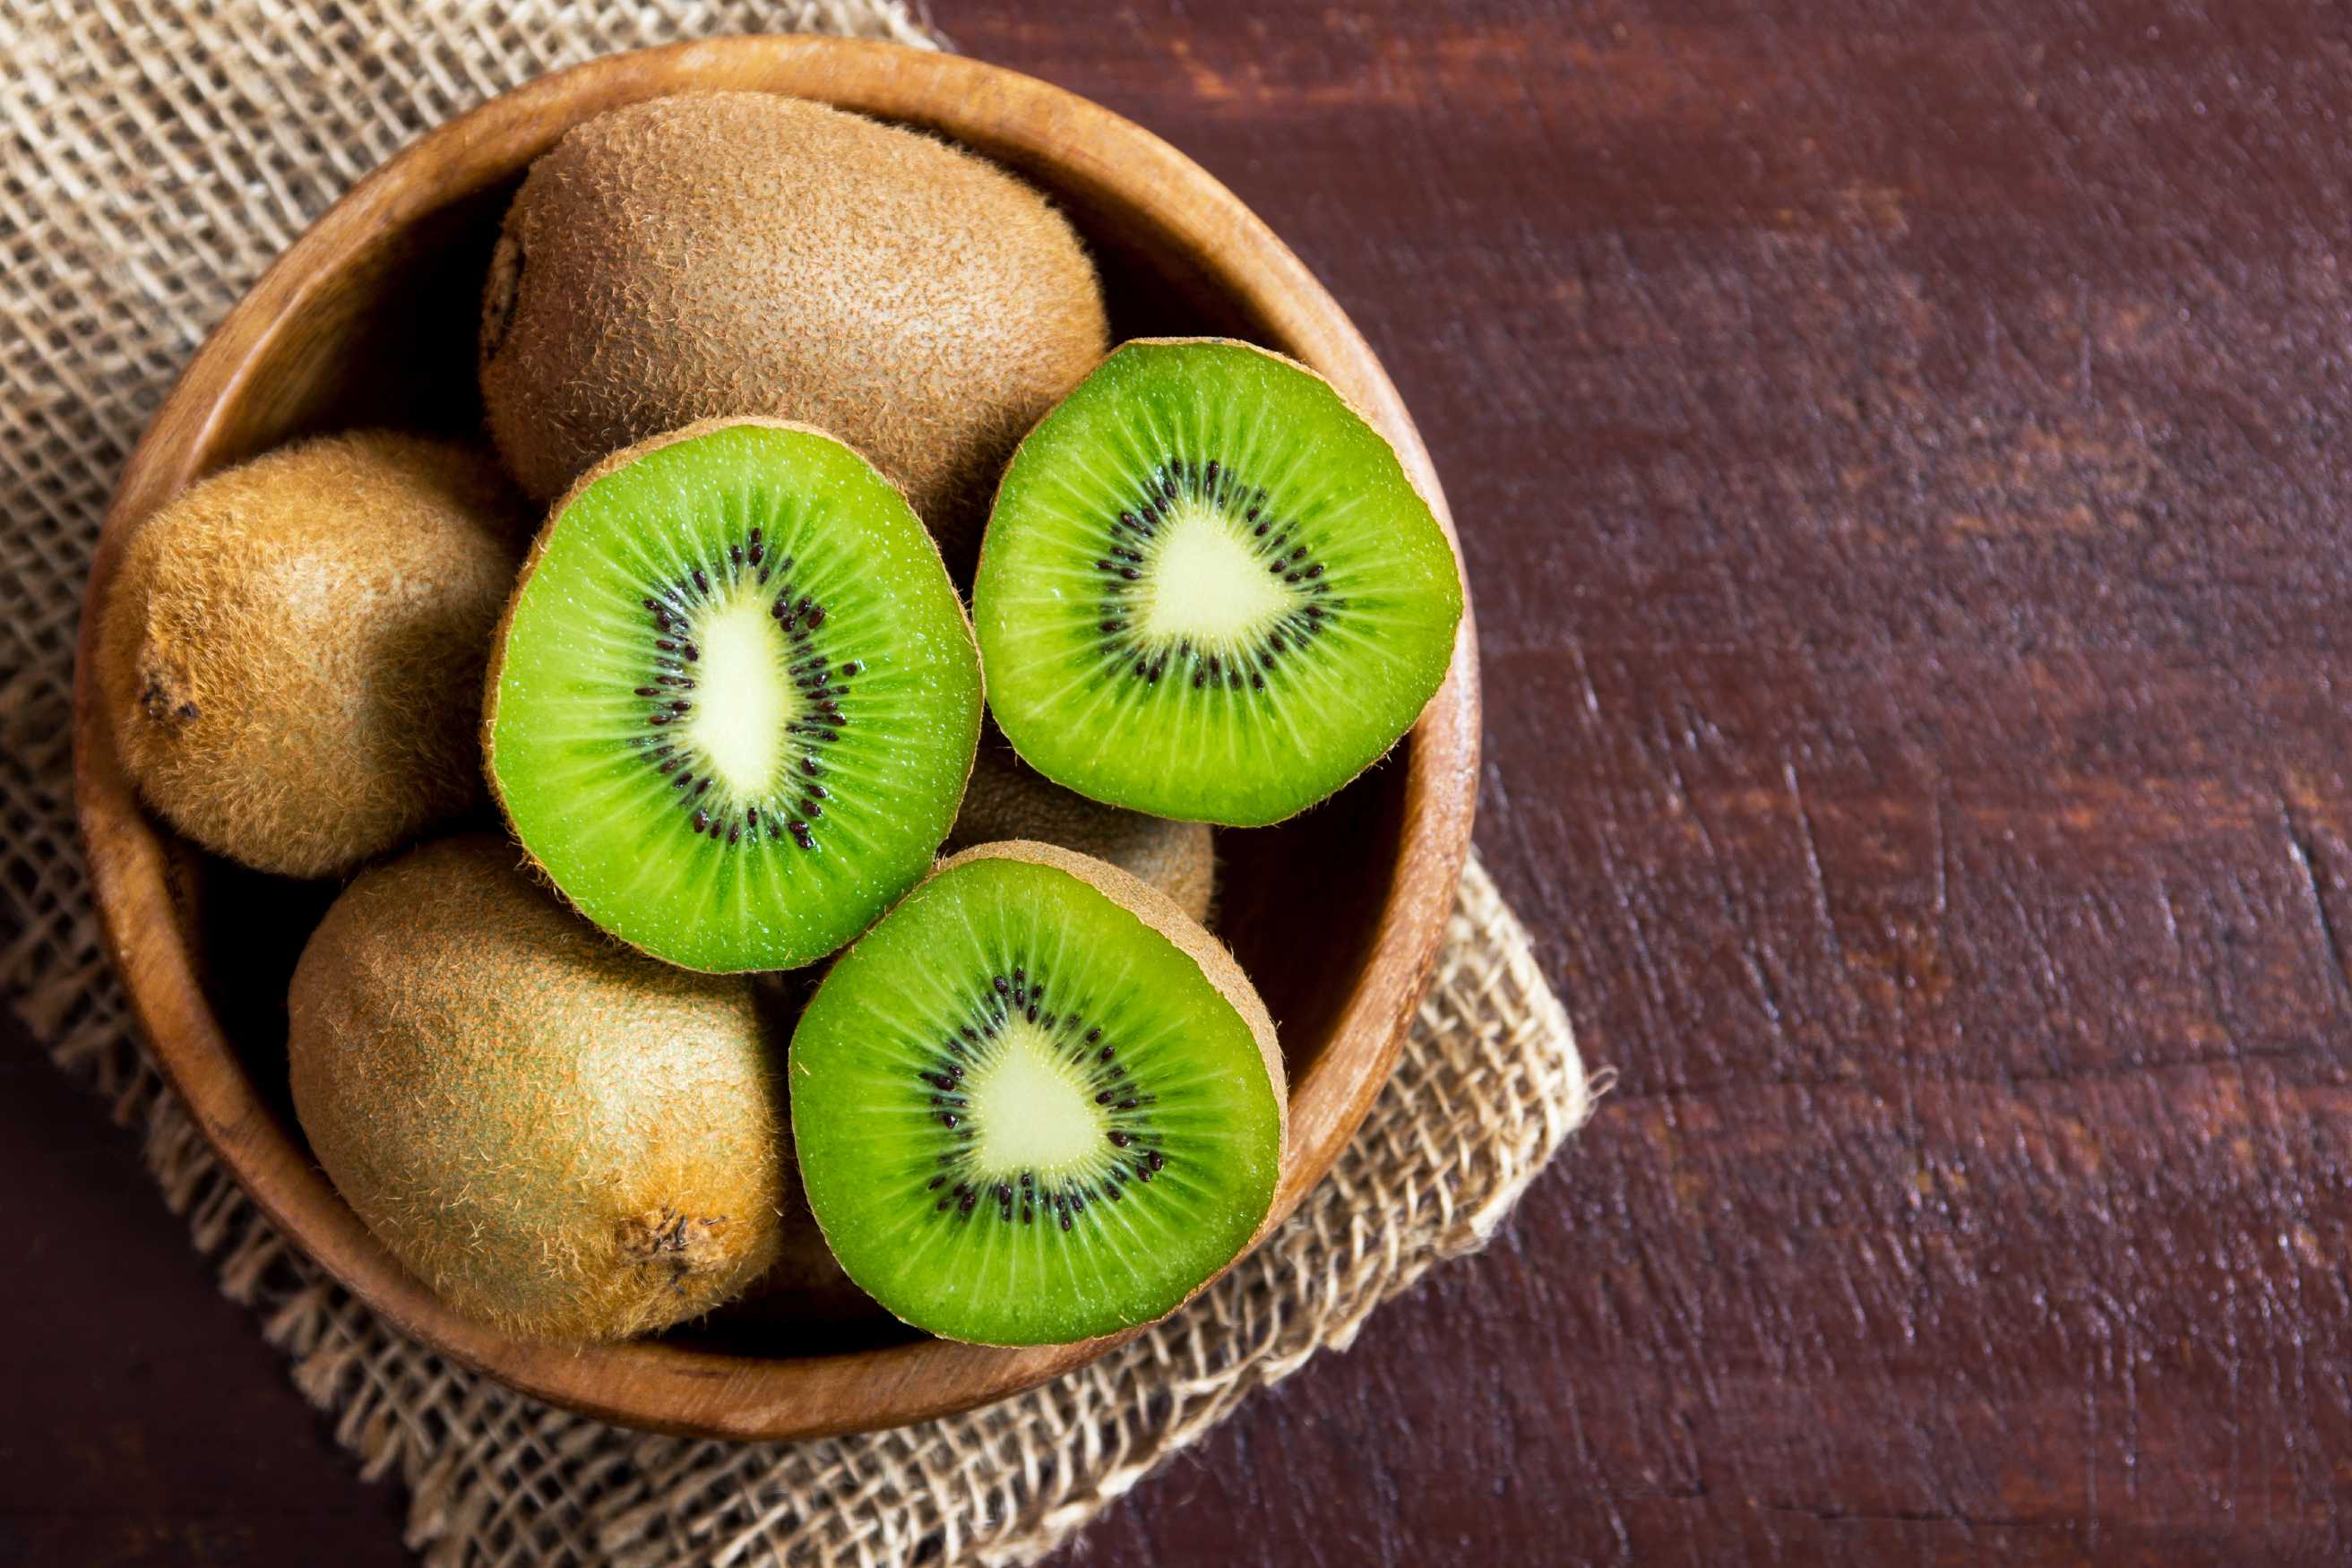 microsoft, demandez à un professionnel de la nutrition : la peau de kiwi est-elle bonne à manger?